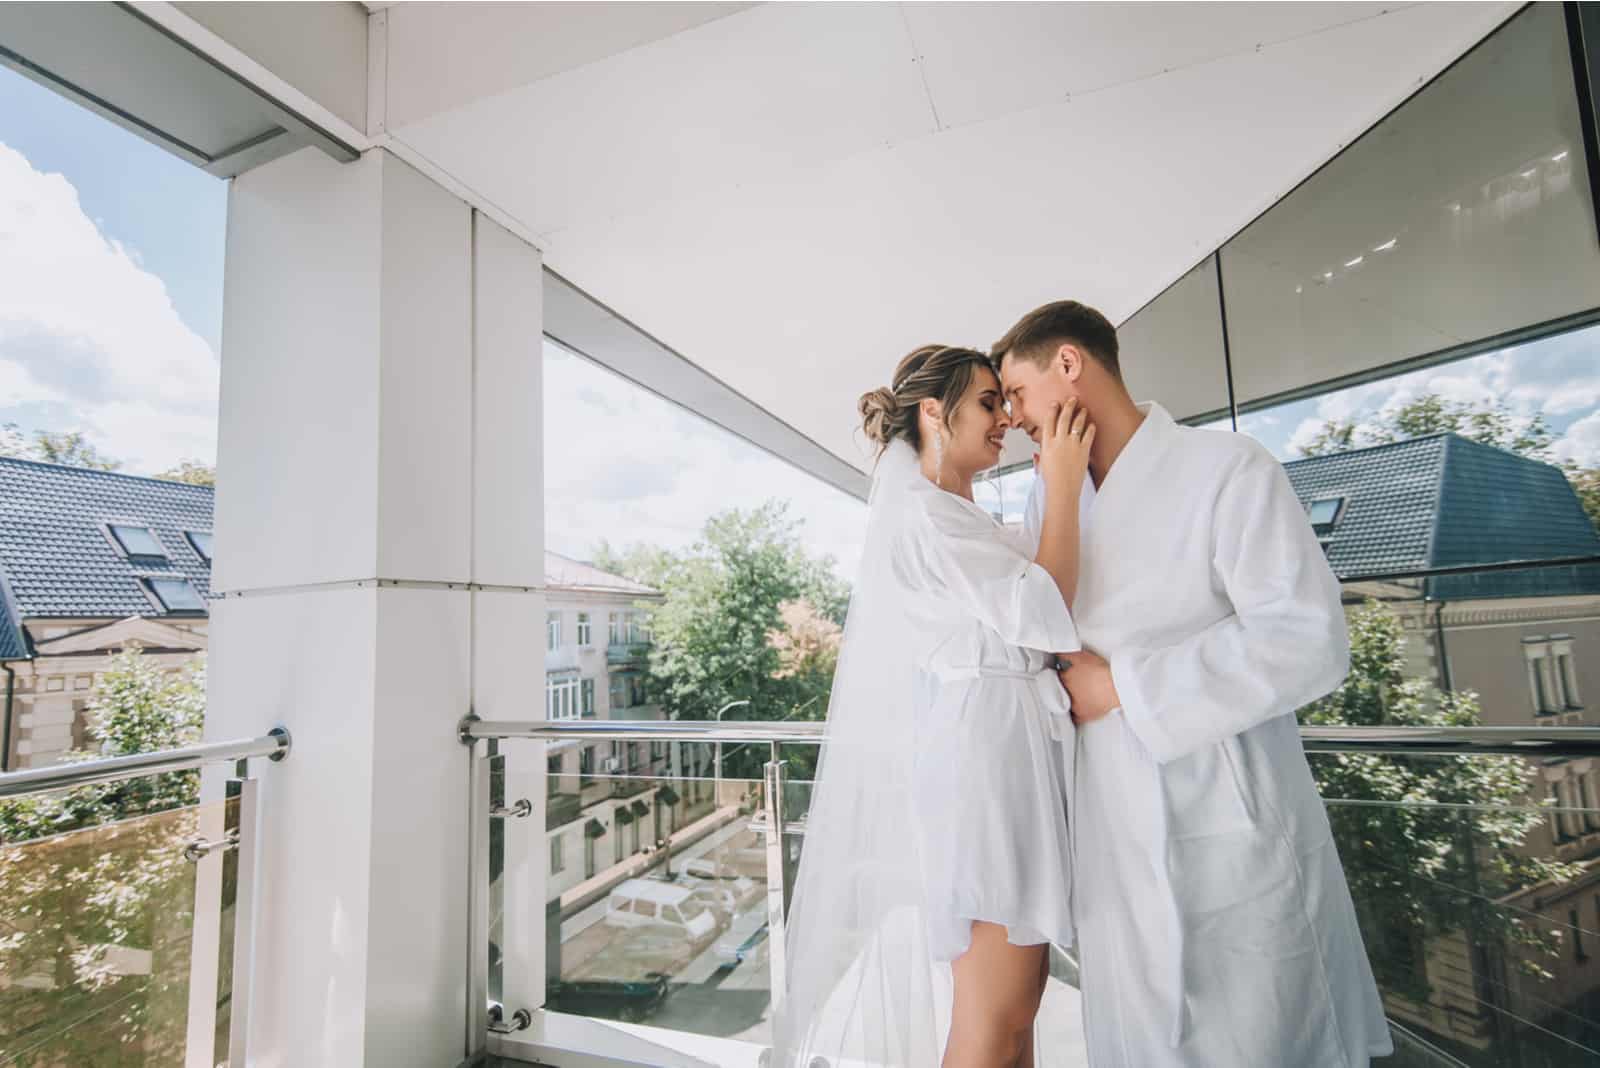 Am Morgen nach der Hochzeit küssen und umarmen sich die Jungvermählten leidenschaftlich auf der Terrasse